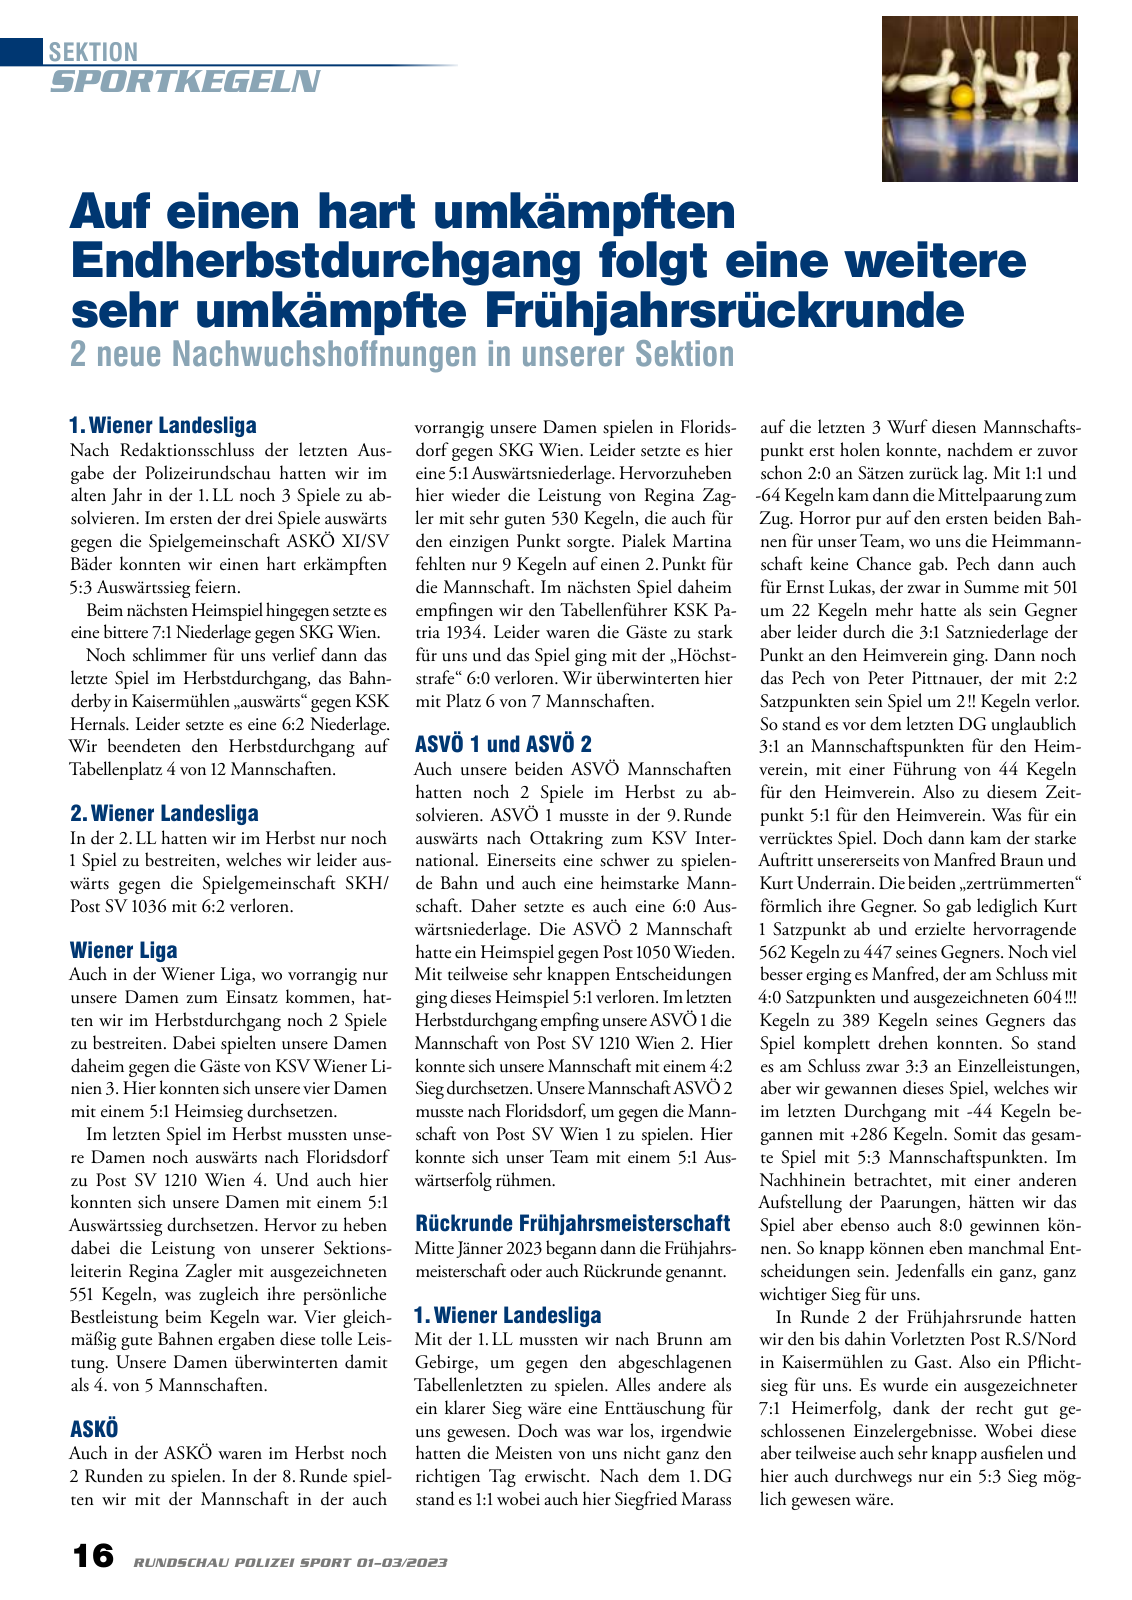 Vorschau Rundschau Polizei Sport 01-03/2023 Seite 16